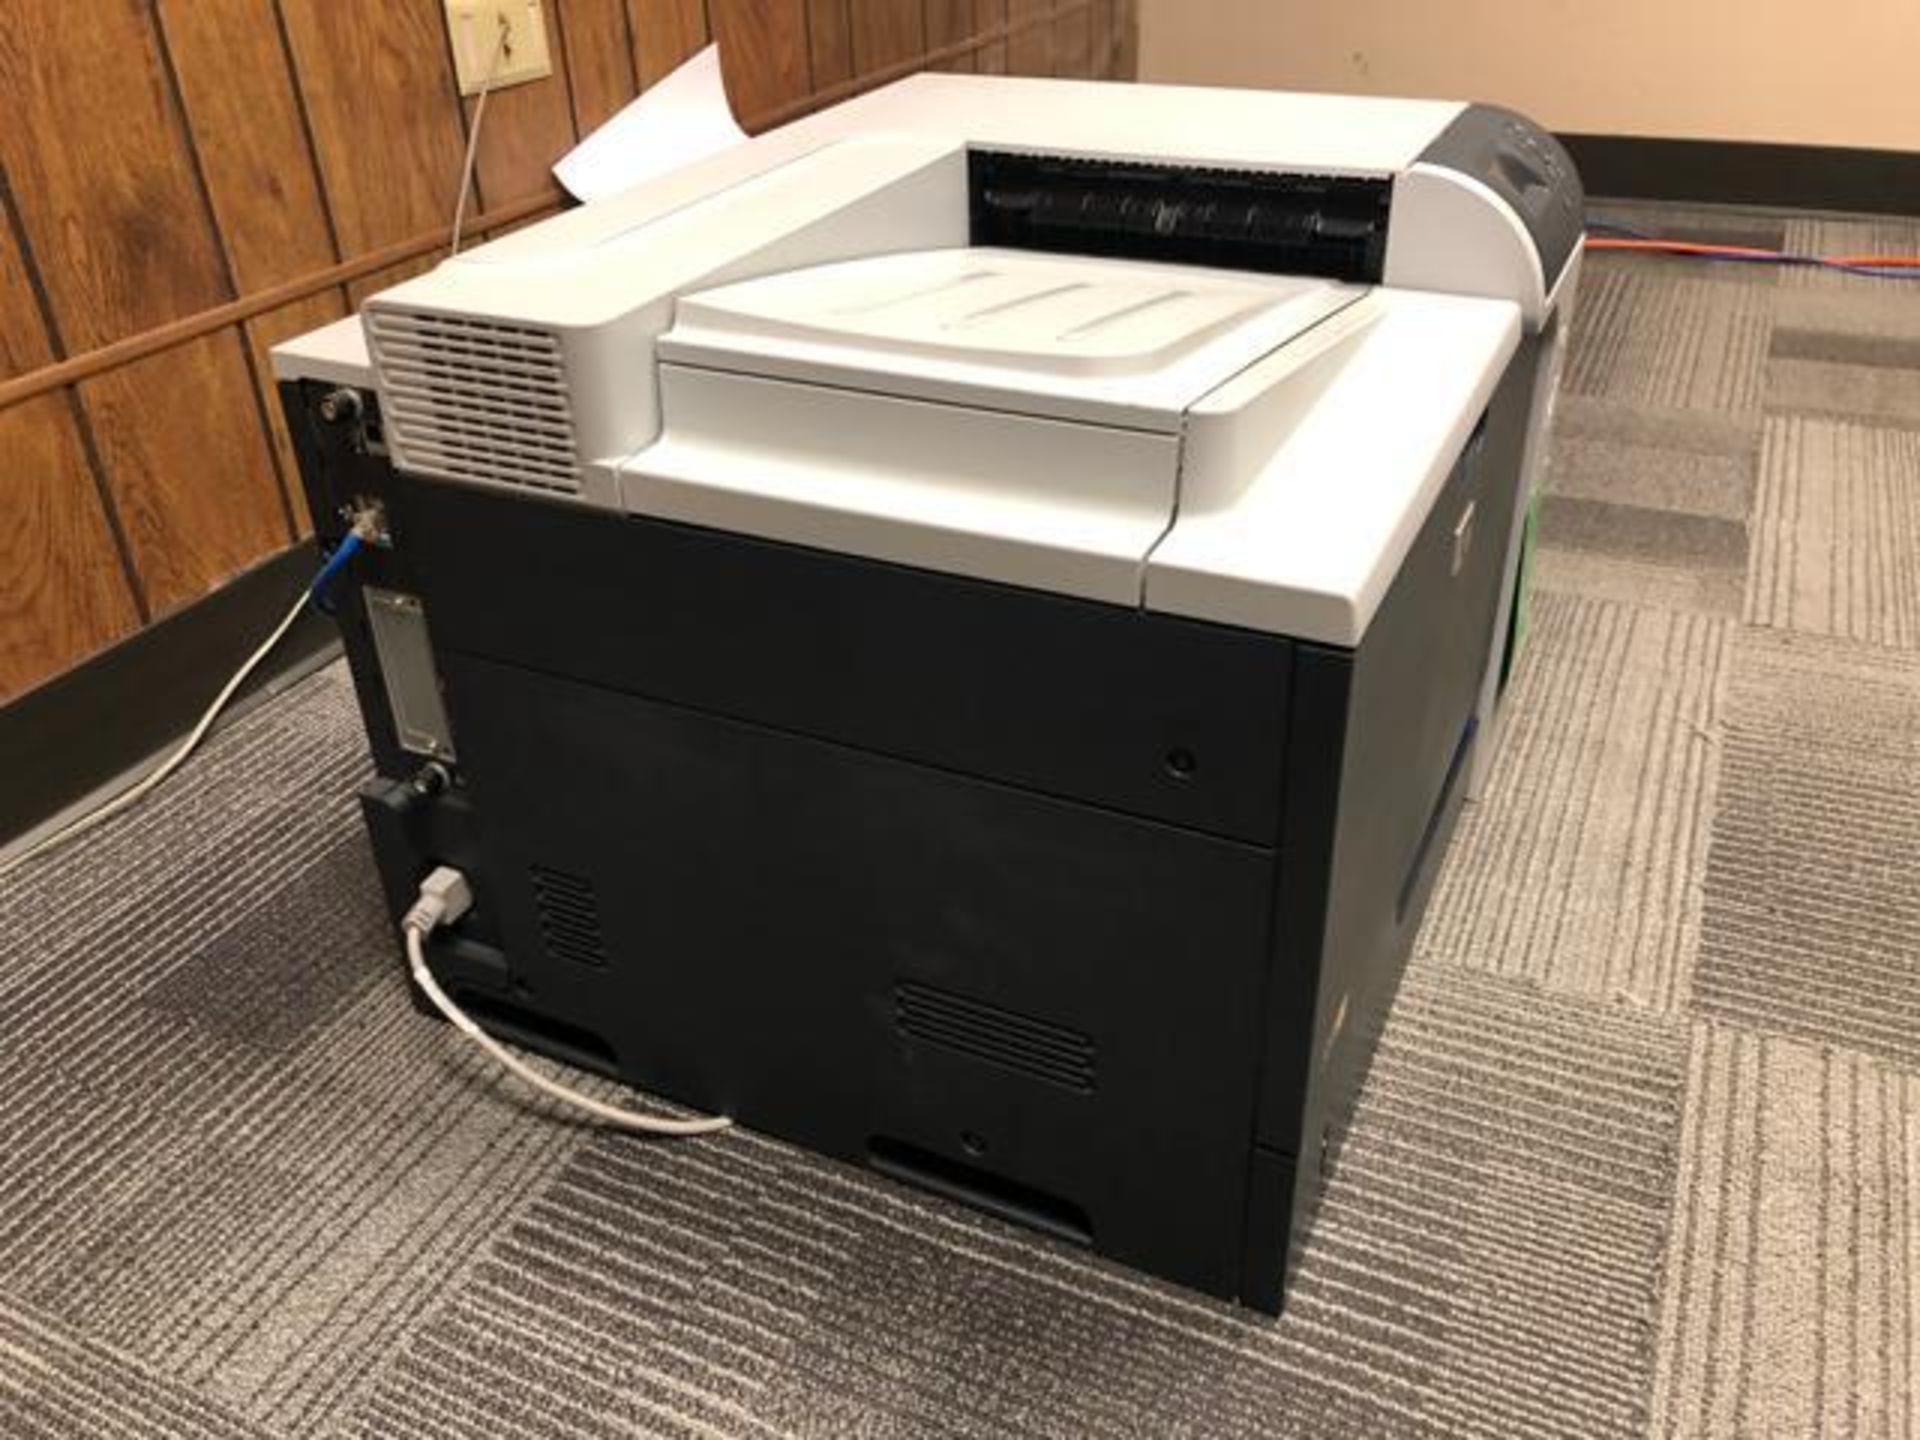 HP Model: CP4025 Color Laser Jet Printer - Image 3 of 3